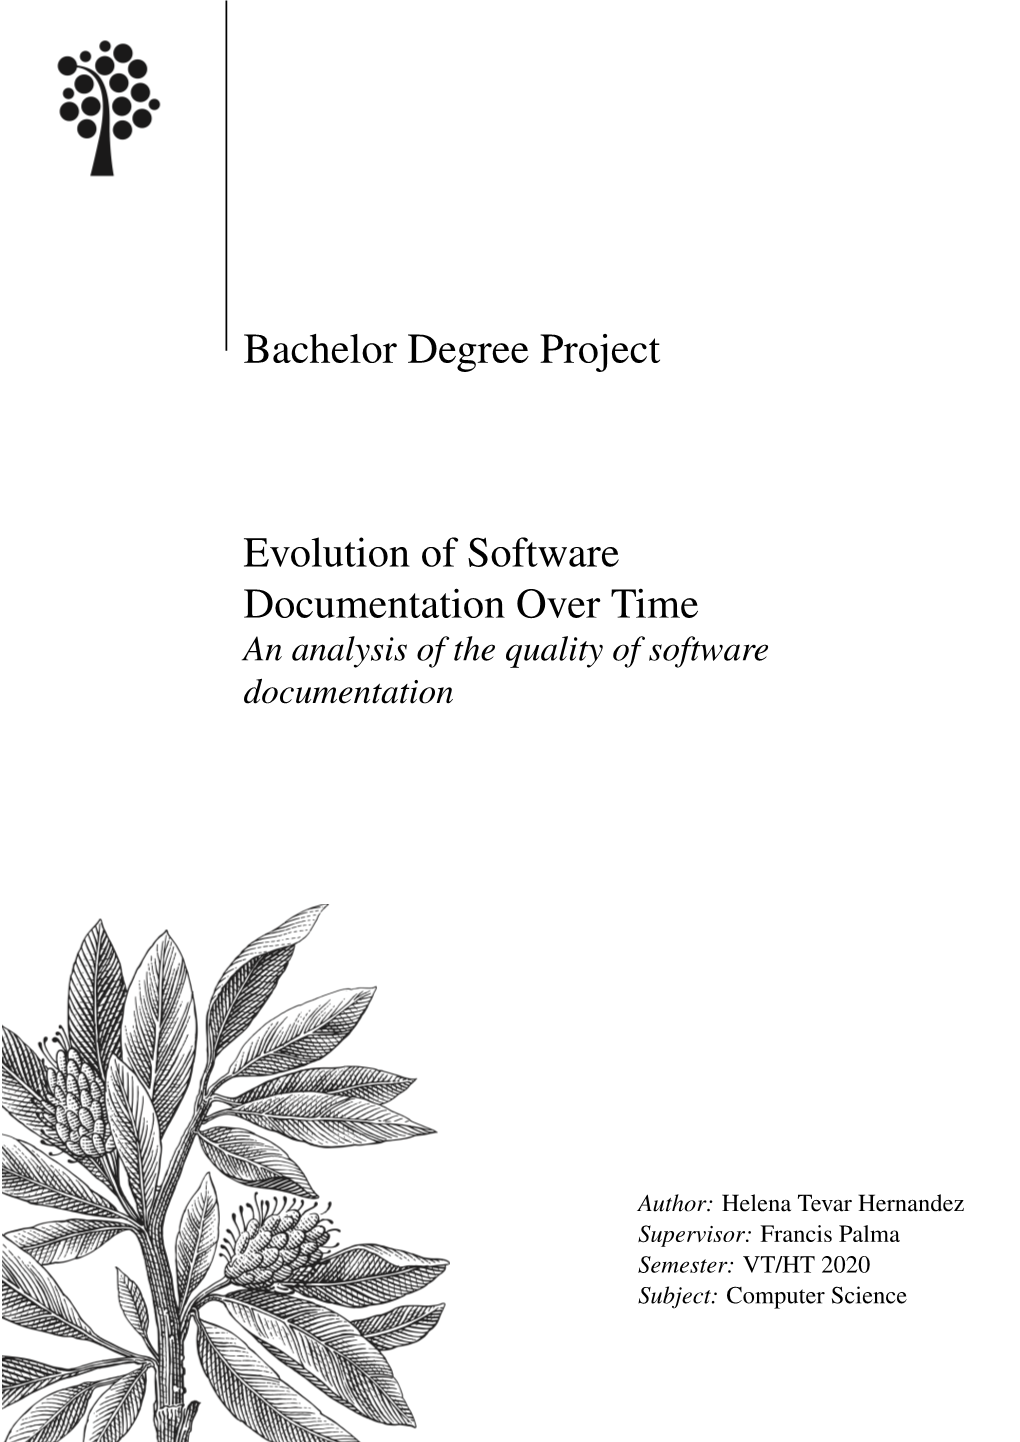 Evolution of Software Documentation Over Time an Analysis of the Quality of Software Documentation